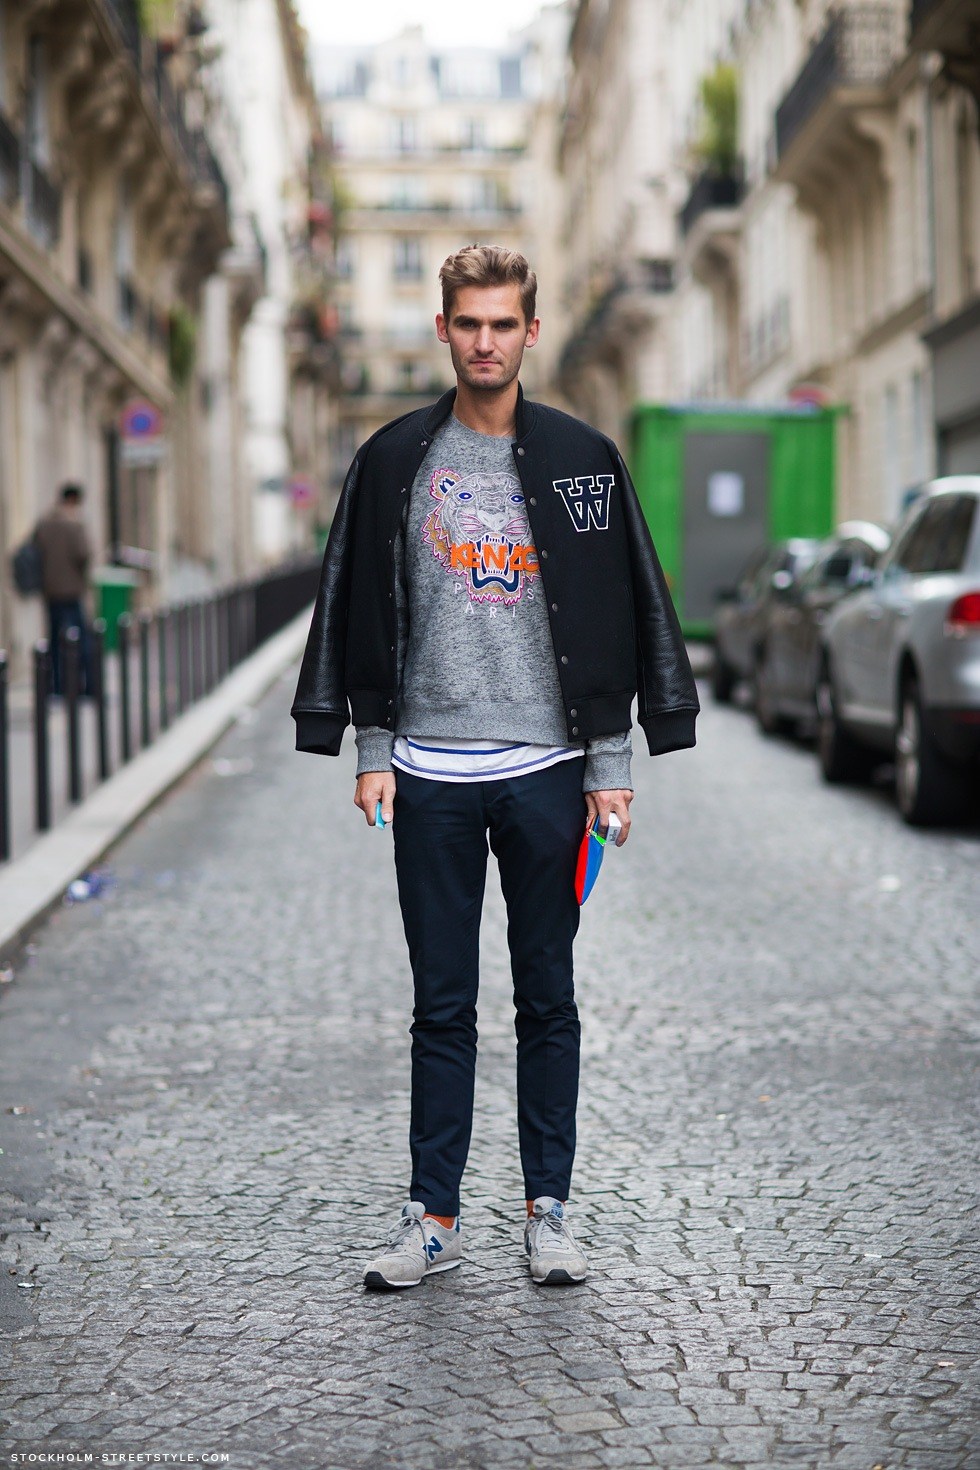 Стильные мужские джинсы 2018: 70 модных деним-образов сезона